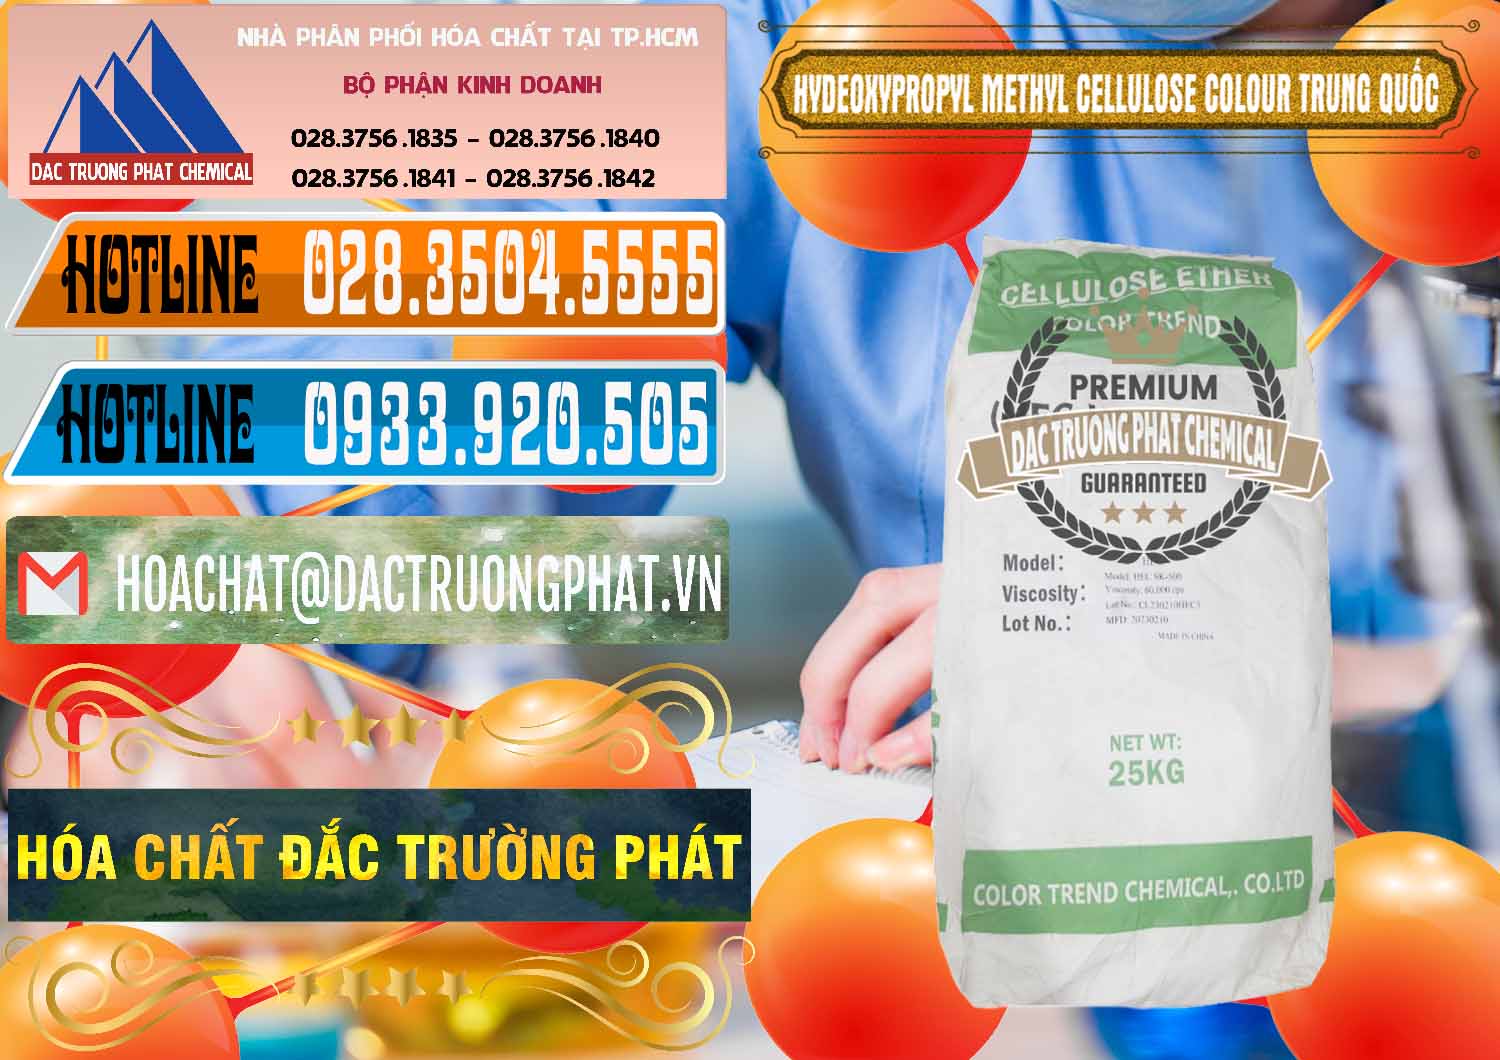 Bán - cung cấp Chất Tạo Đặc HPMC - Hydroxypropyl Methyl Cellulose Color Trung Quốc China - 0397 - Đơn vị bán & phân phối hóa chất tại TP.HCM - stmp.net